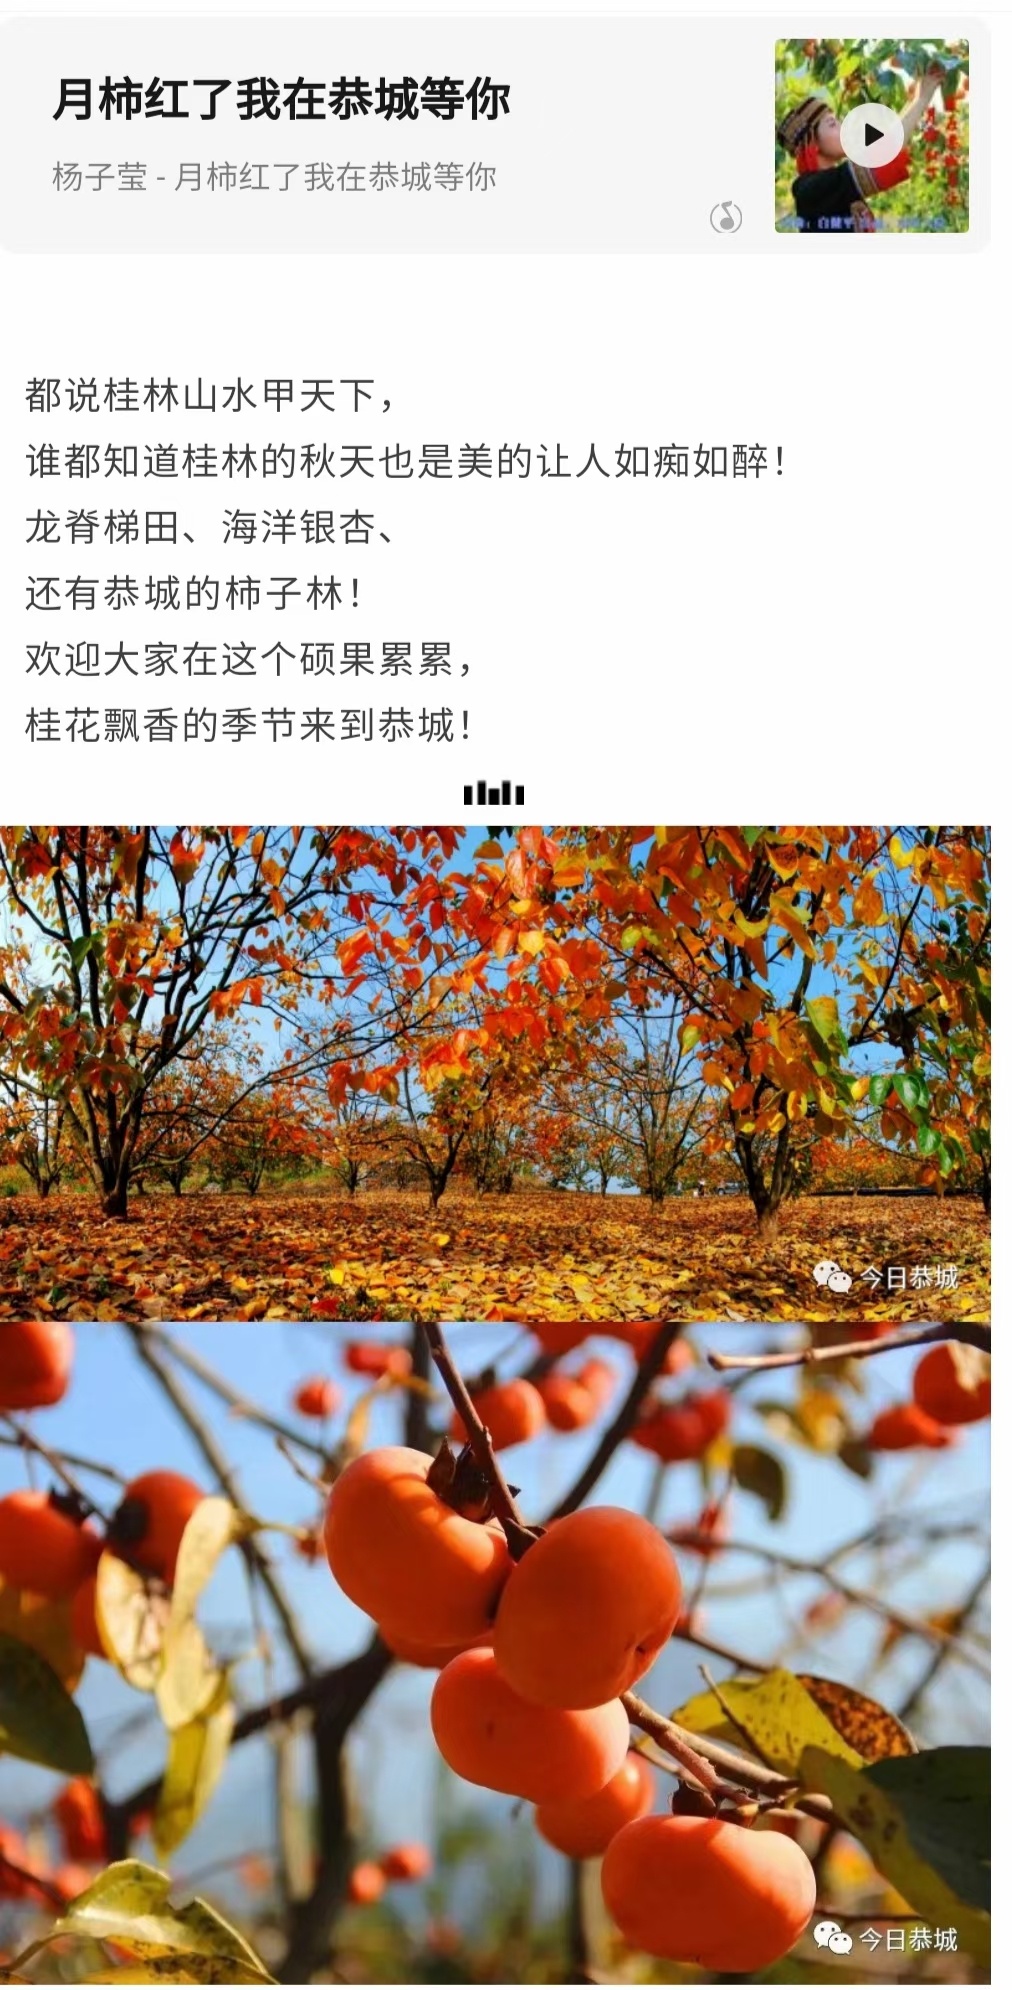 家乡的柿子红了266 / 作者:陈宏福 / 帖子ID:300201